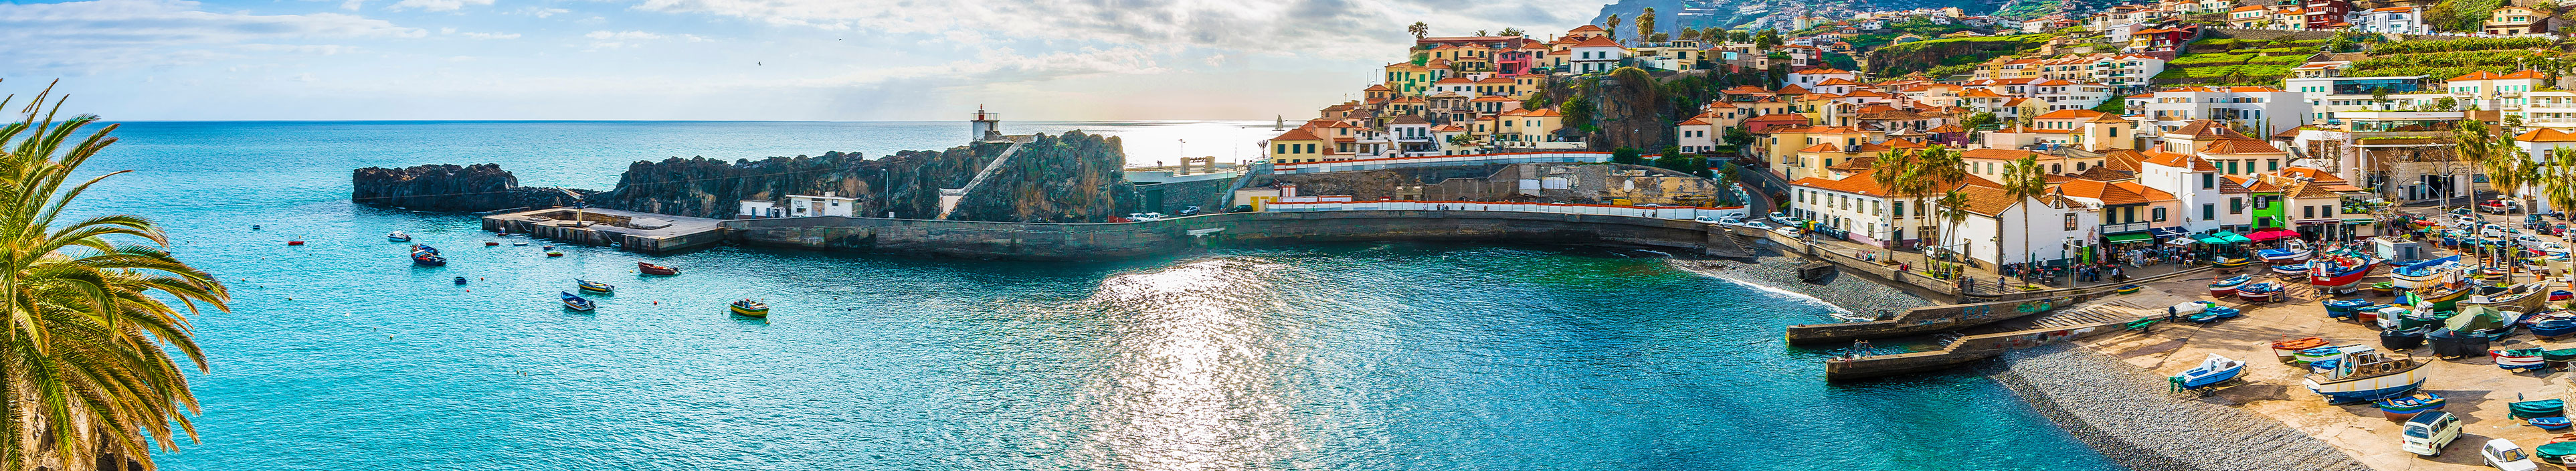 Urlaub Madeira.Bunte Häuser am Meer mit Bucht und kleinem Anlegerhafen.